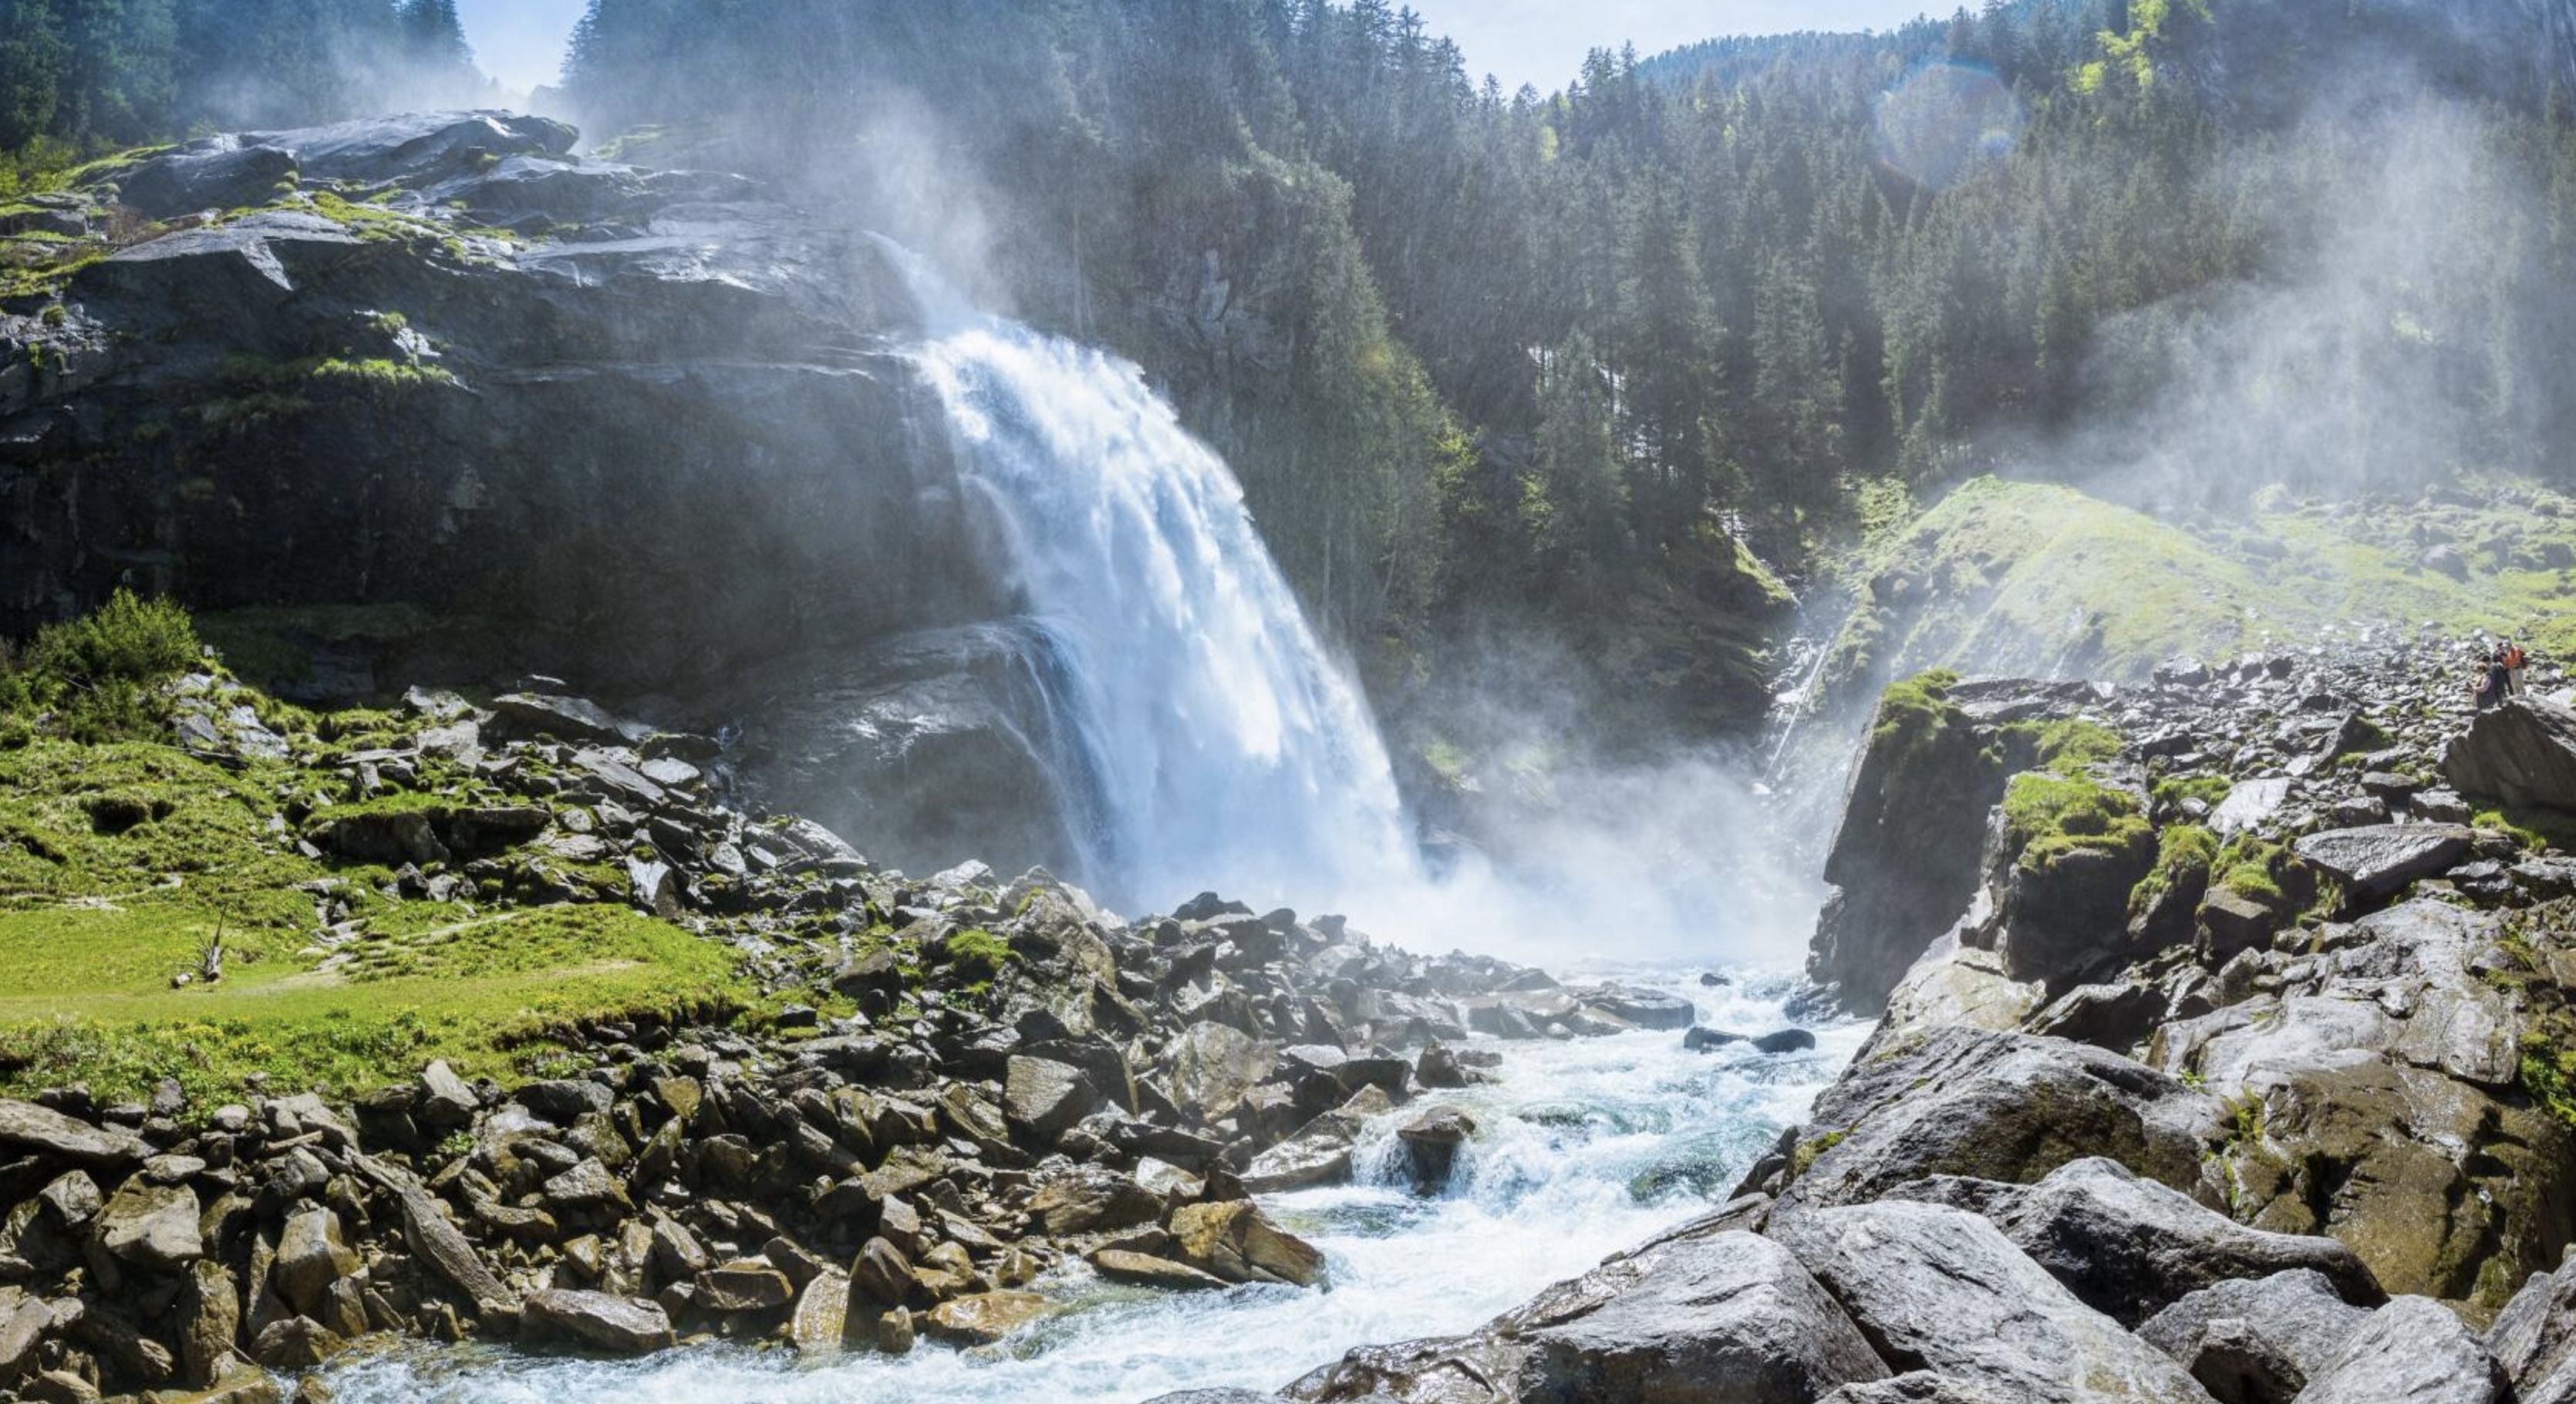 Krimmler Wasserfälle: 2 ÜN im Alpengasthof Filzstein inkl. Halbpension + Zugang zu den Wasserfällen ab 94€ p.P.